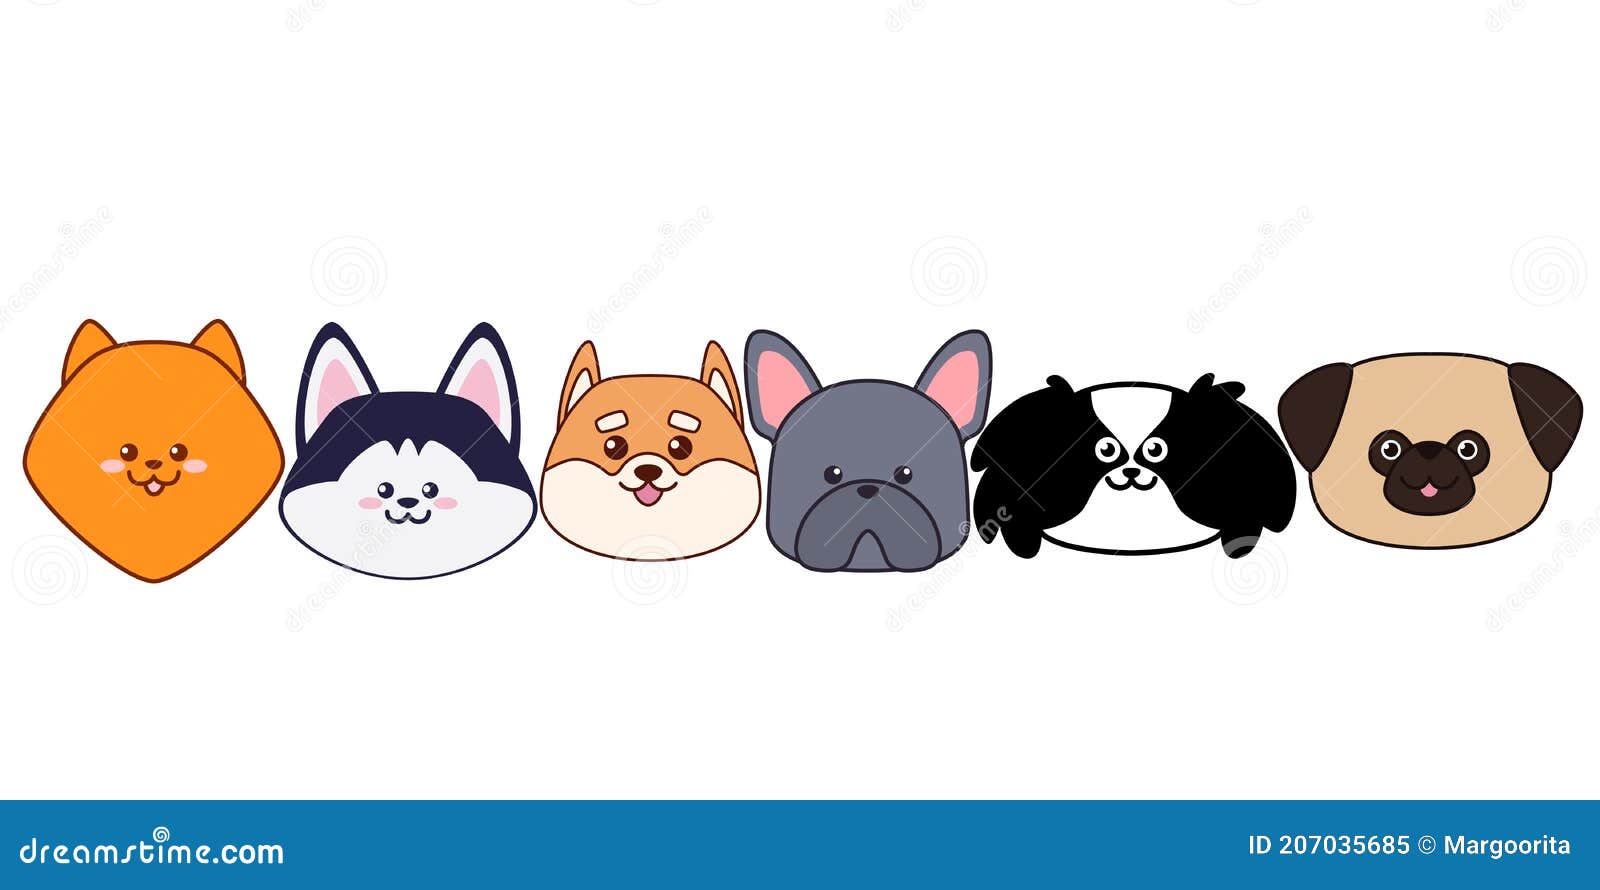 ilustração de cachorro fofo cachorro kawaii chibi estilo de